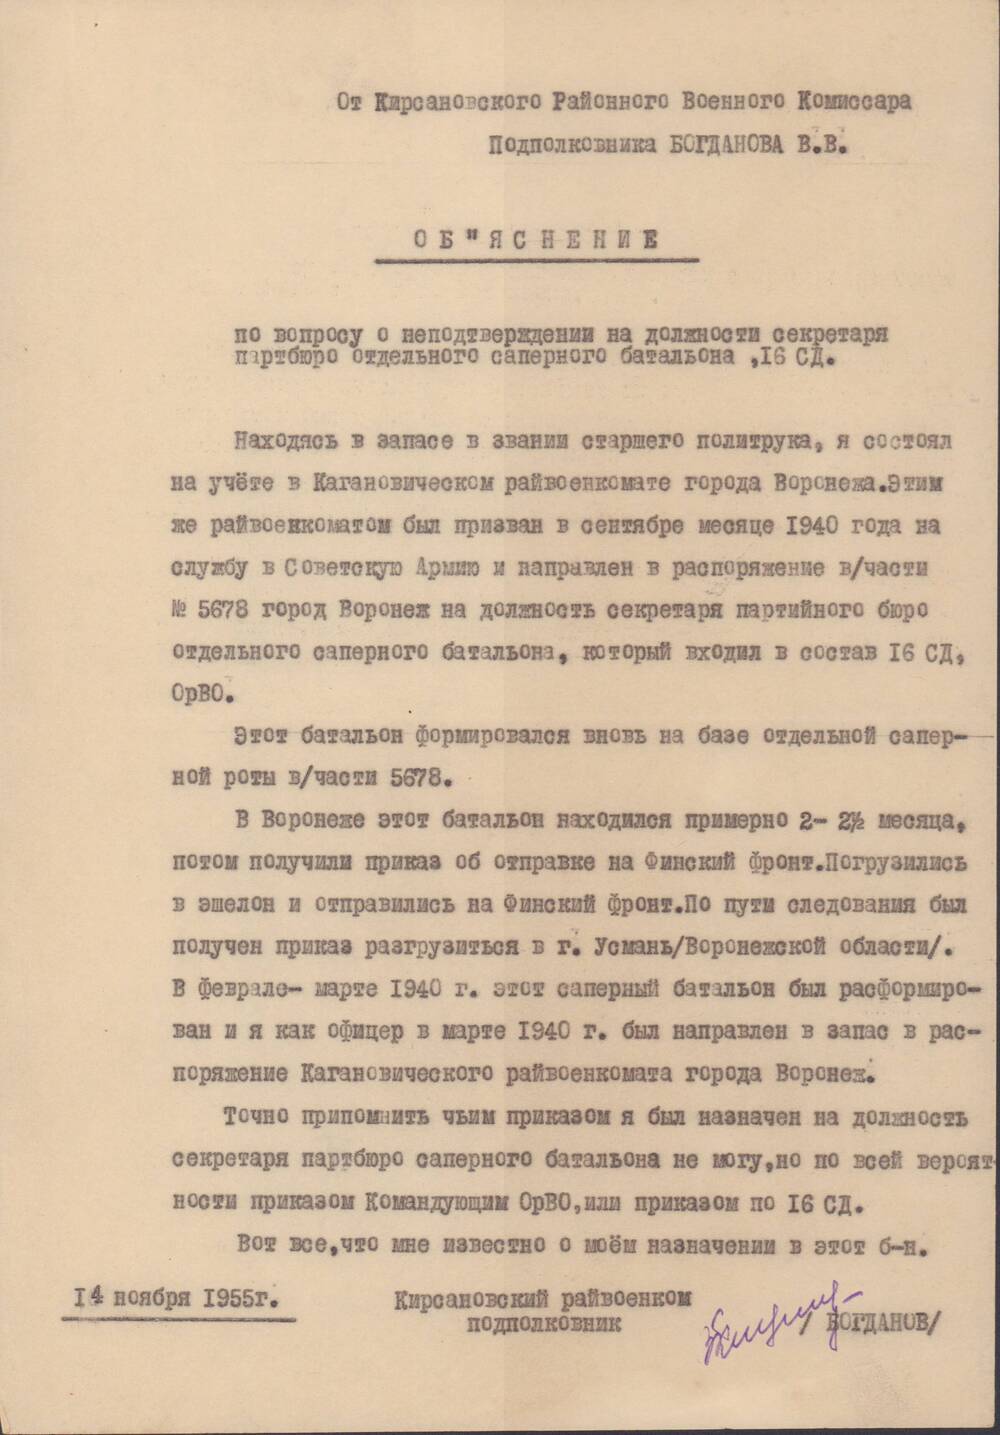 Объяснение Богданова В.В. по вопросу о неподтверждении на должности секретаря партбюро отдельного саперного батальона, 16СД